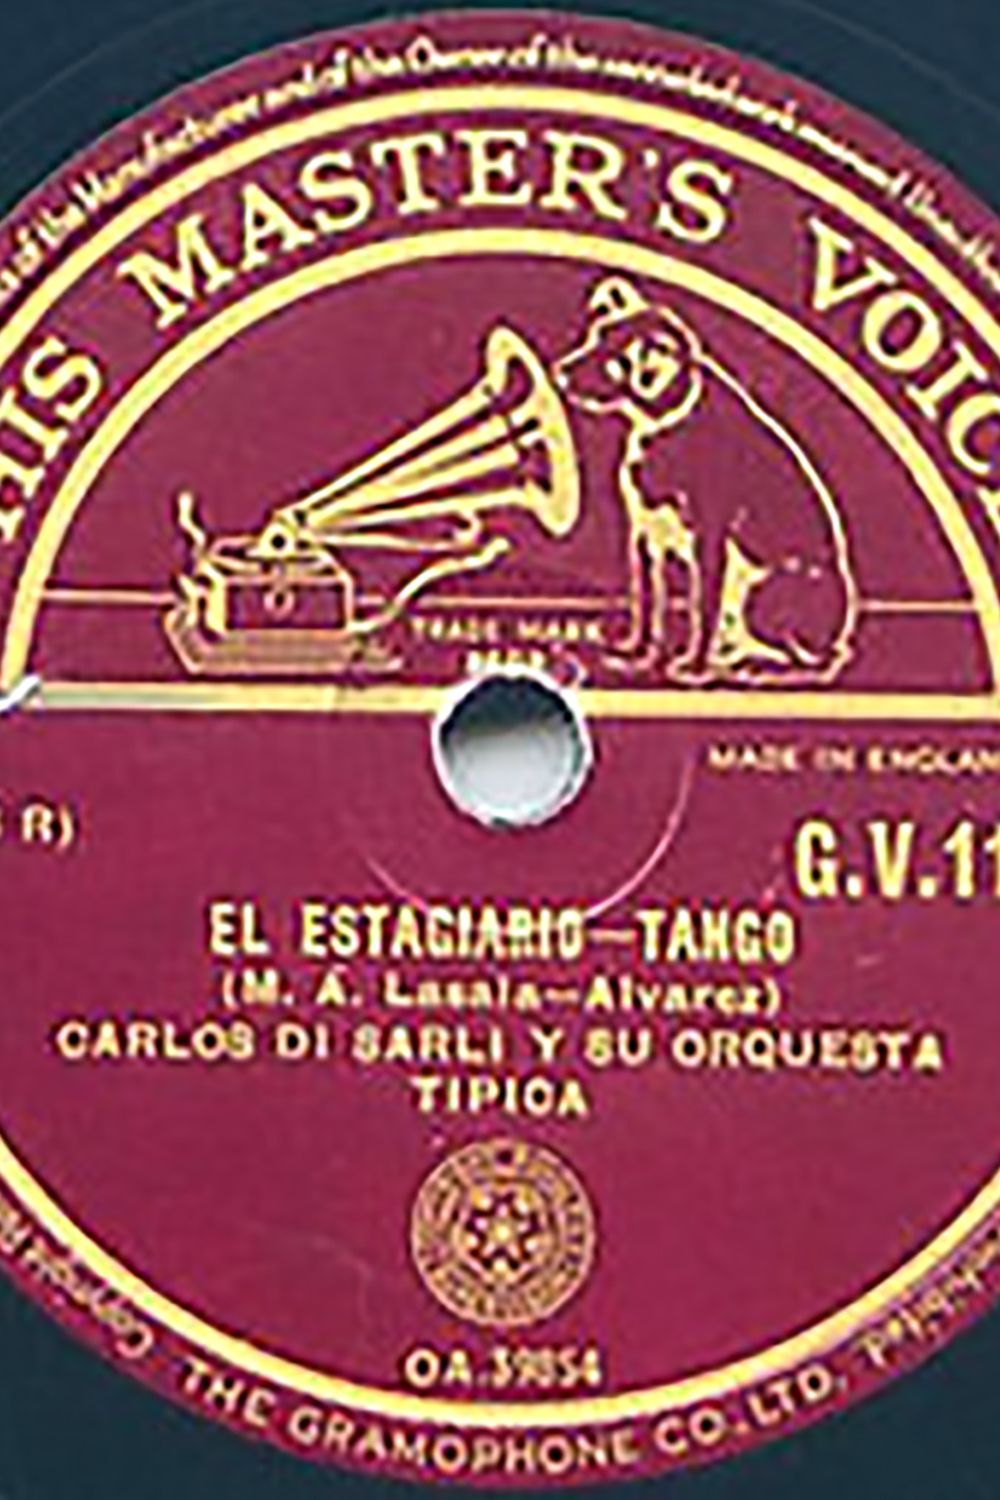 "El estagiario", disco vinilo del tango.